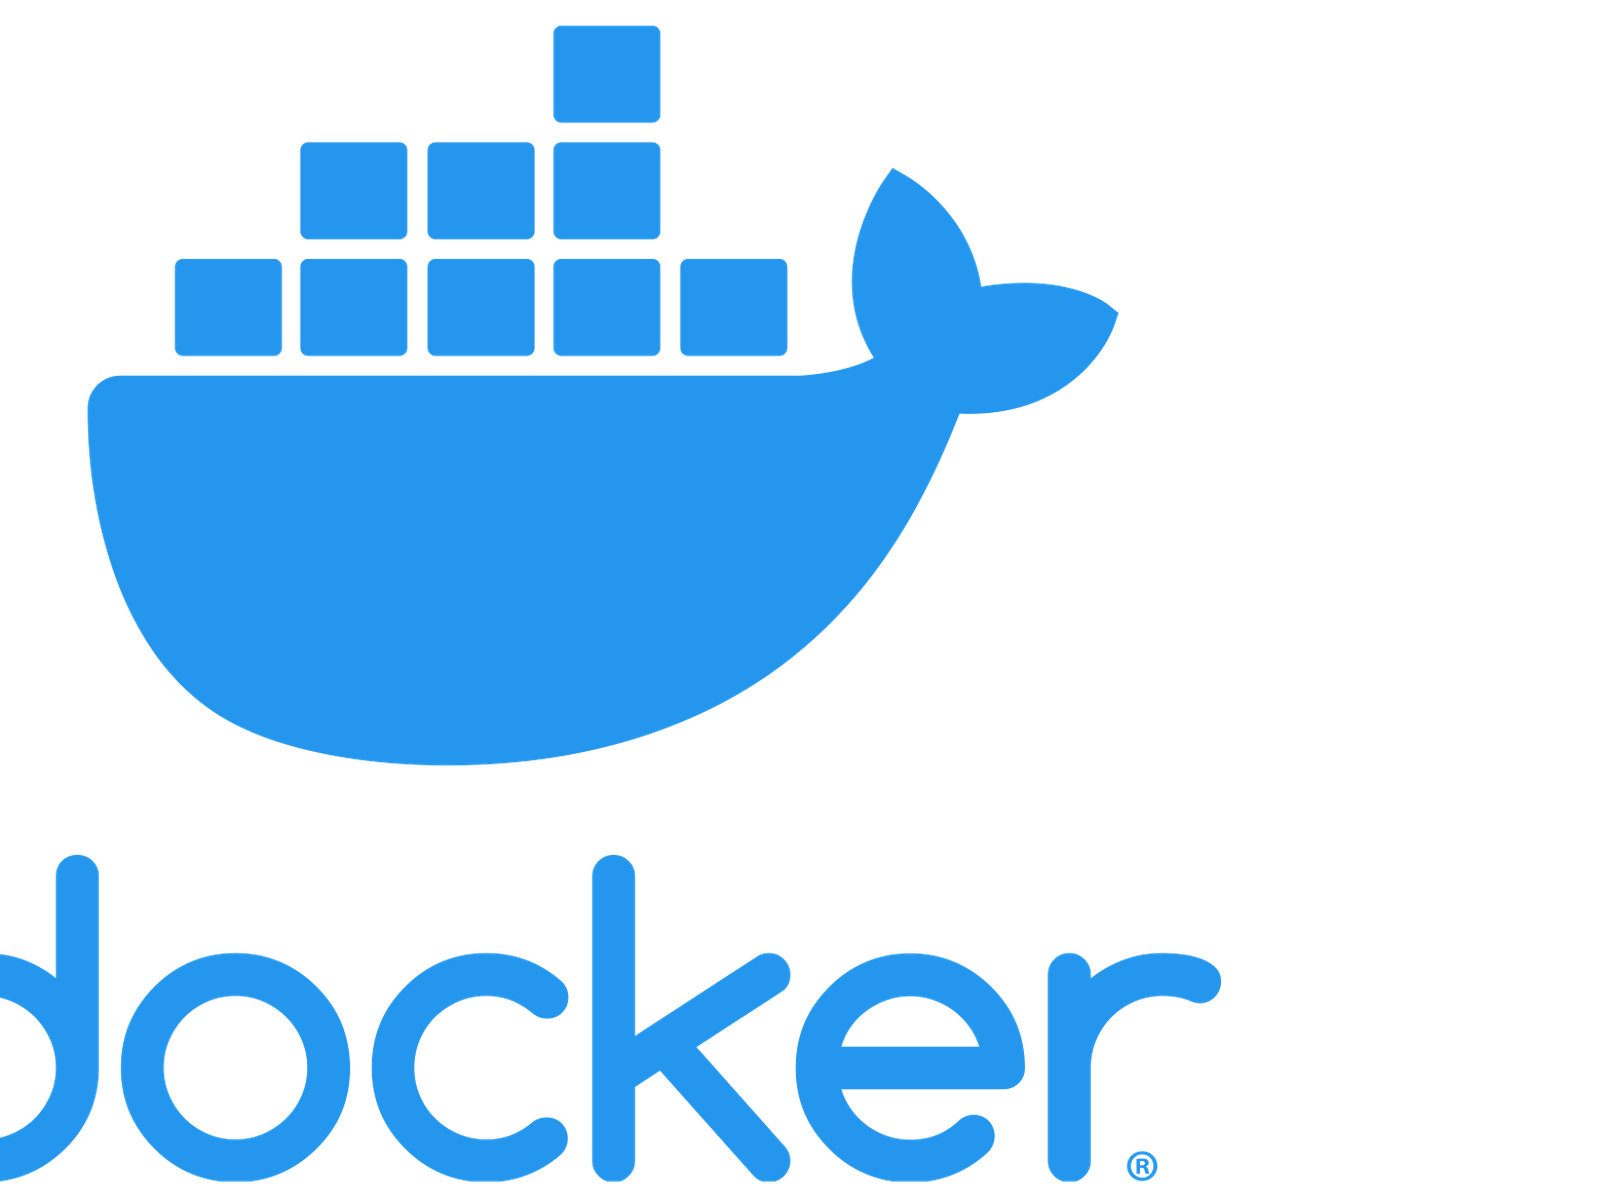 docker for mac releases